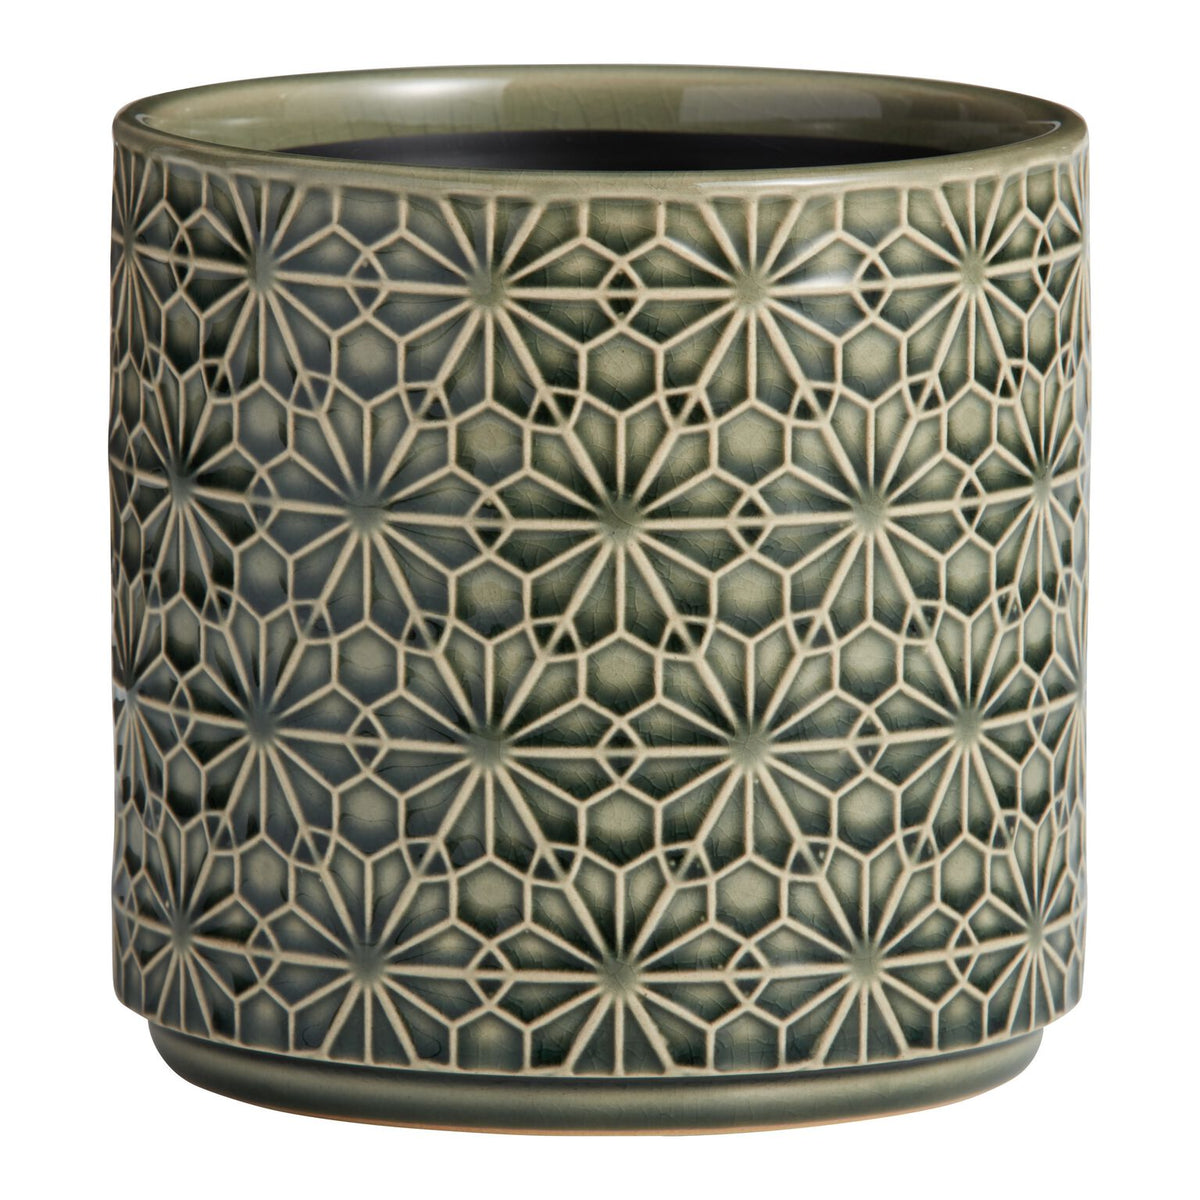 Stamped Floral Design Ceramic Flower Pot - Home Hatch